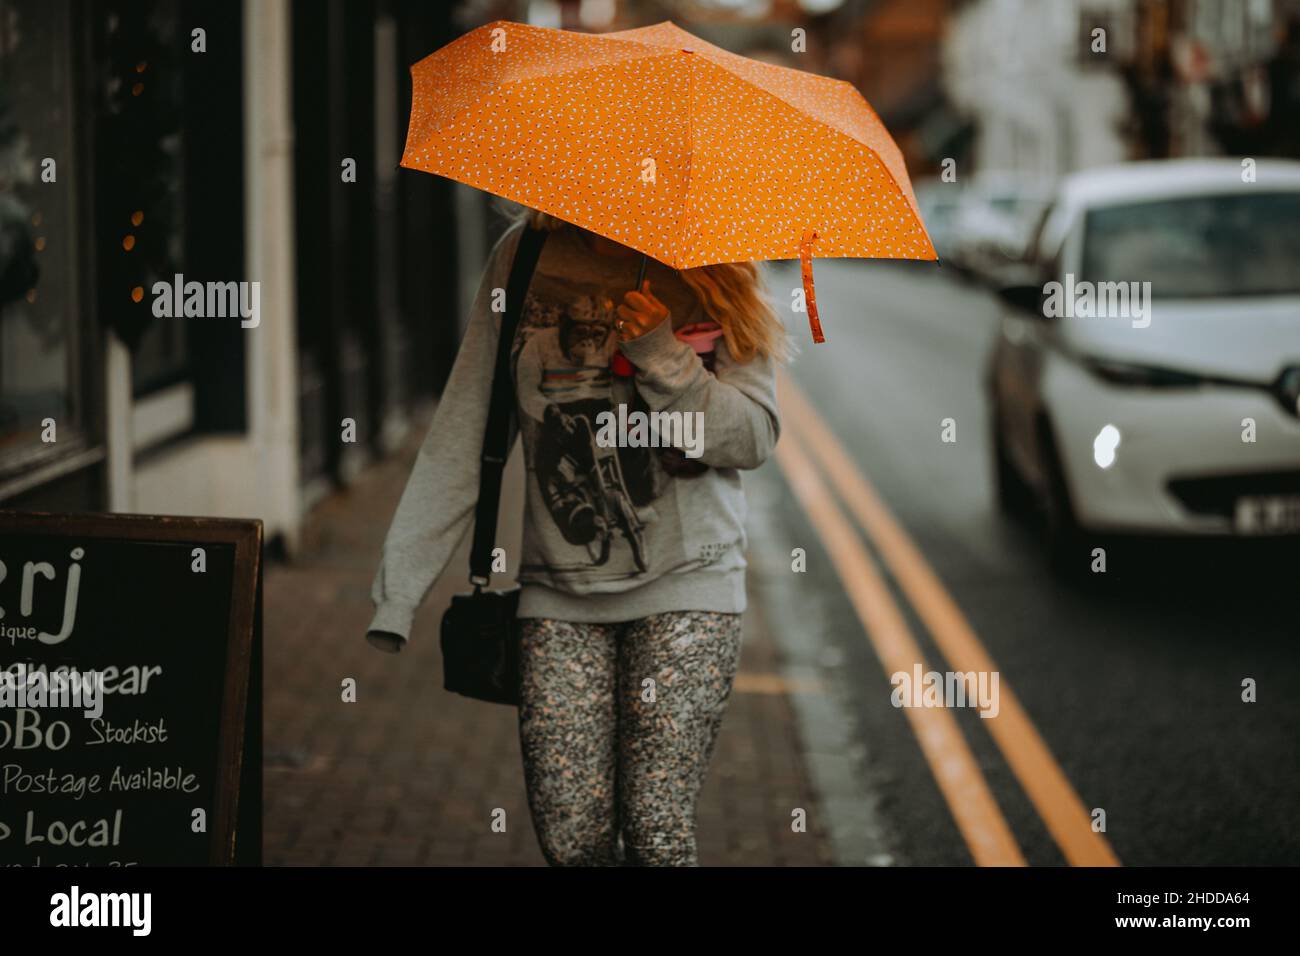 Weibchen mit einem orangenen Regenschirm, der in einer Stadt spazierengeht Stockfoto